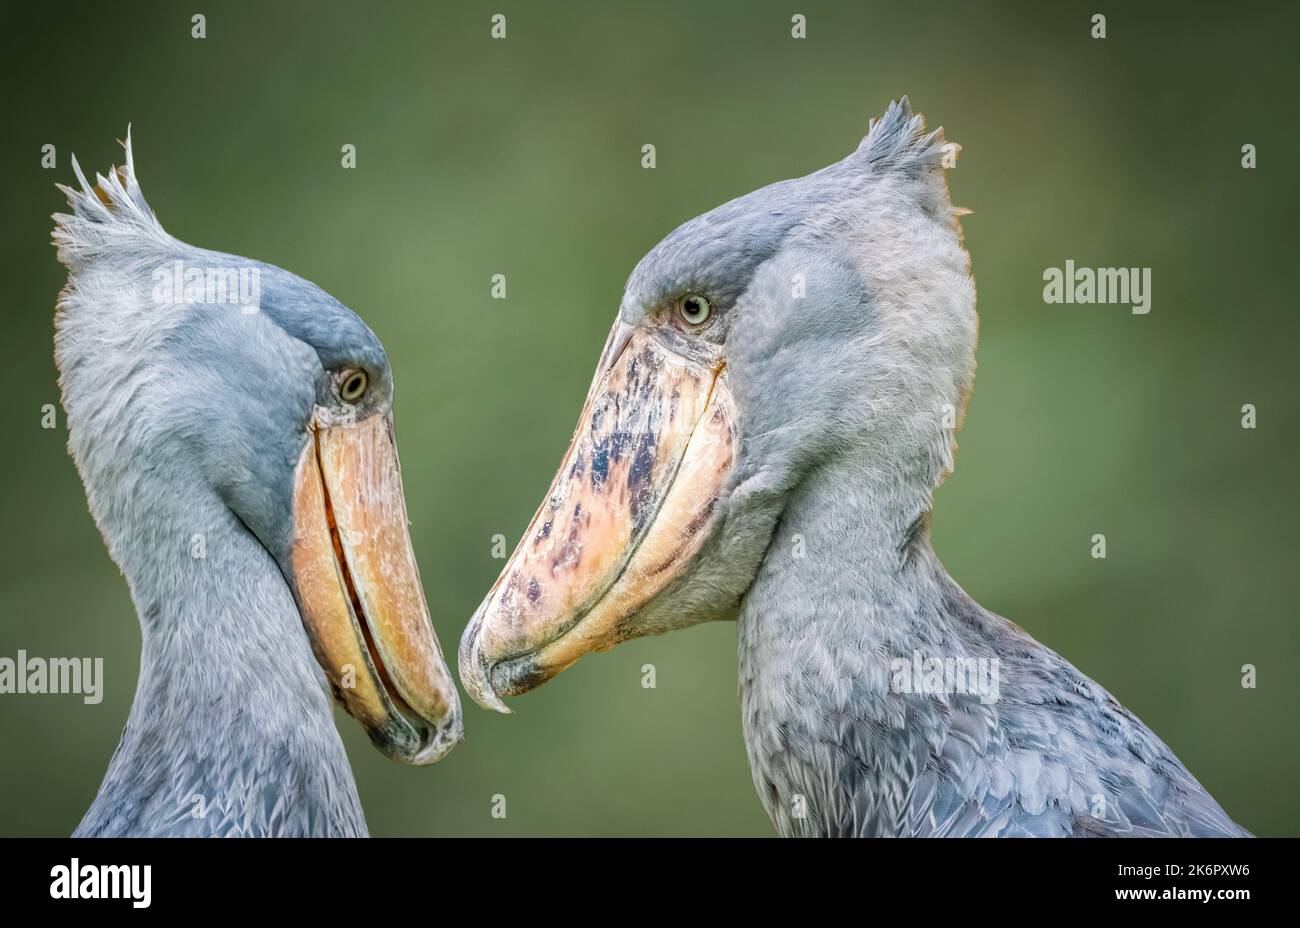 Deux Storks de Shoebill (Balaeniceps rex) également connus sous le nom de whealhead, Whale-head stork, Whalebill, faisant face l'un à ZooTampa à Lowry Park à Tampa FL Banque D'Images